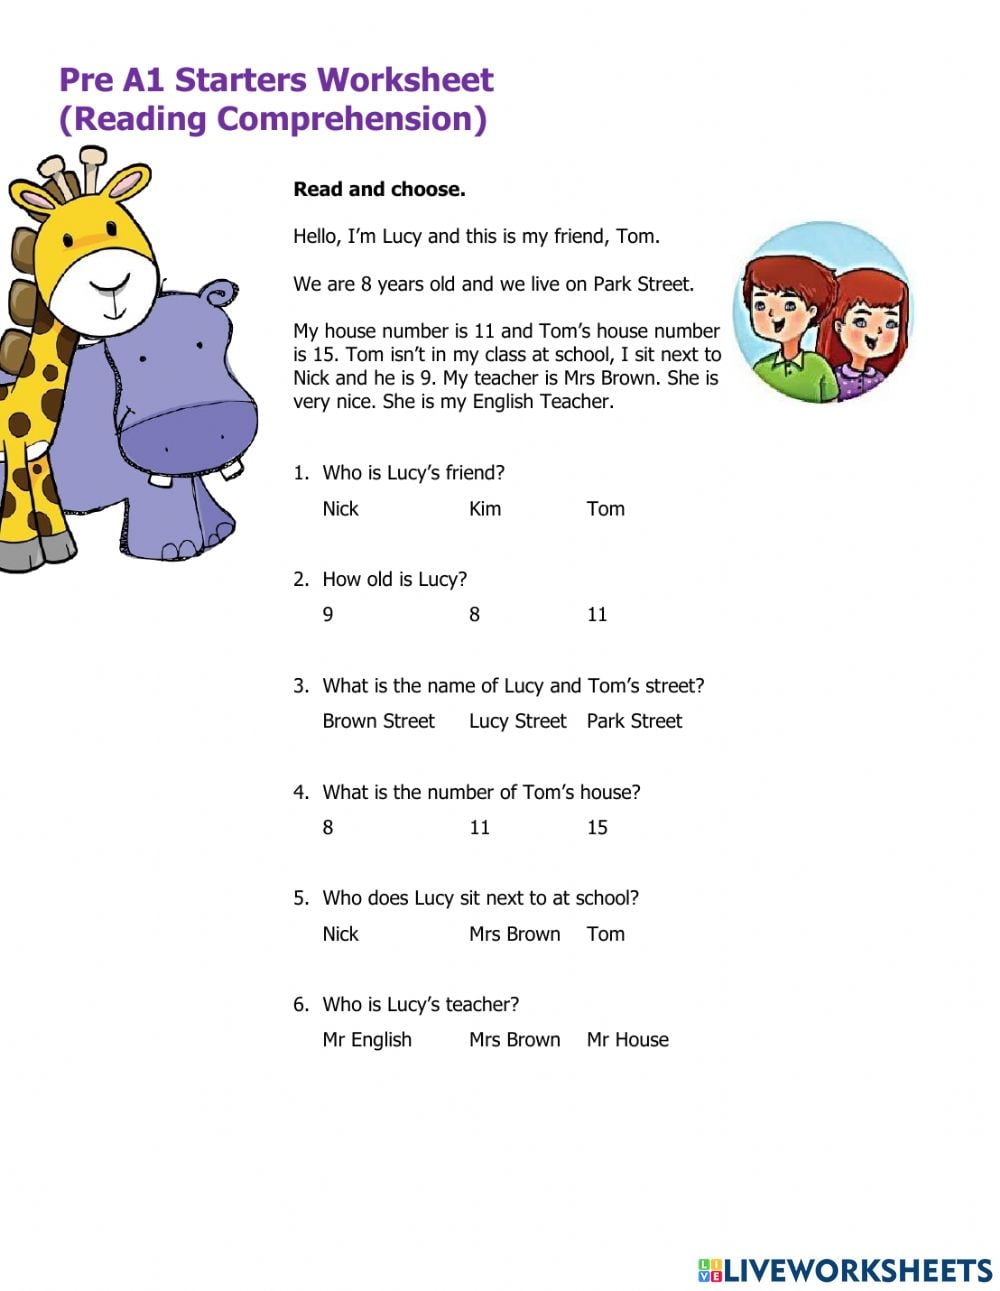 Pre A1 Starters Worksheet Reading Comprehension Worksheet